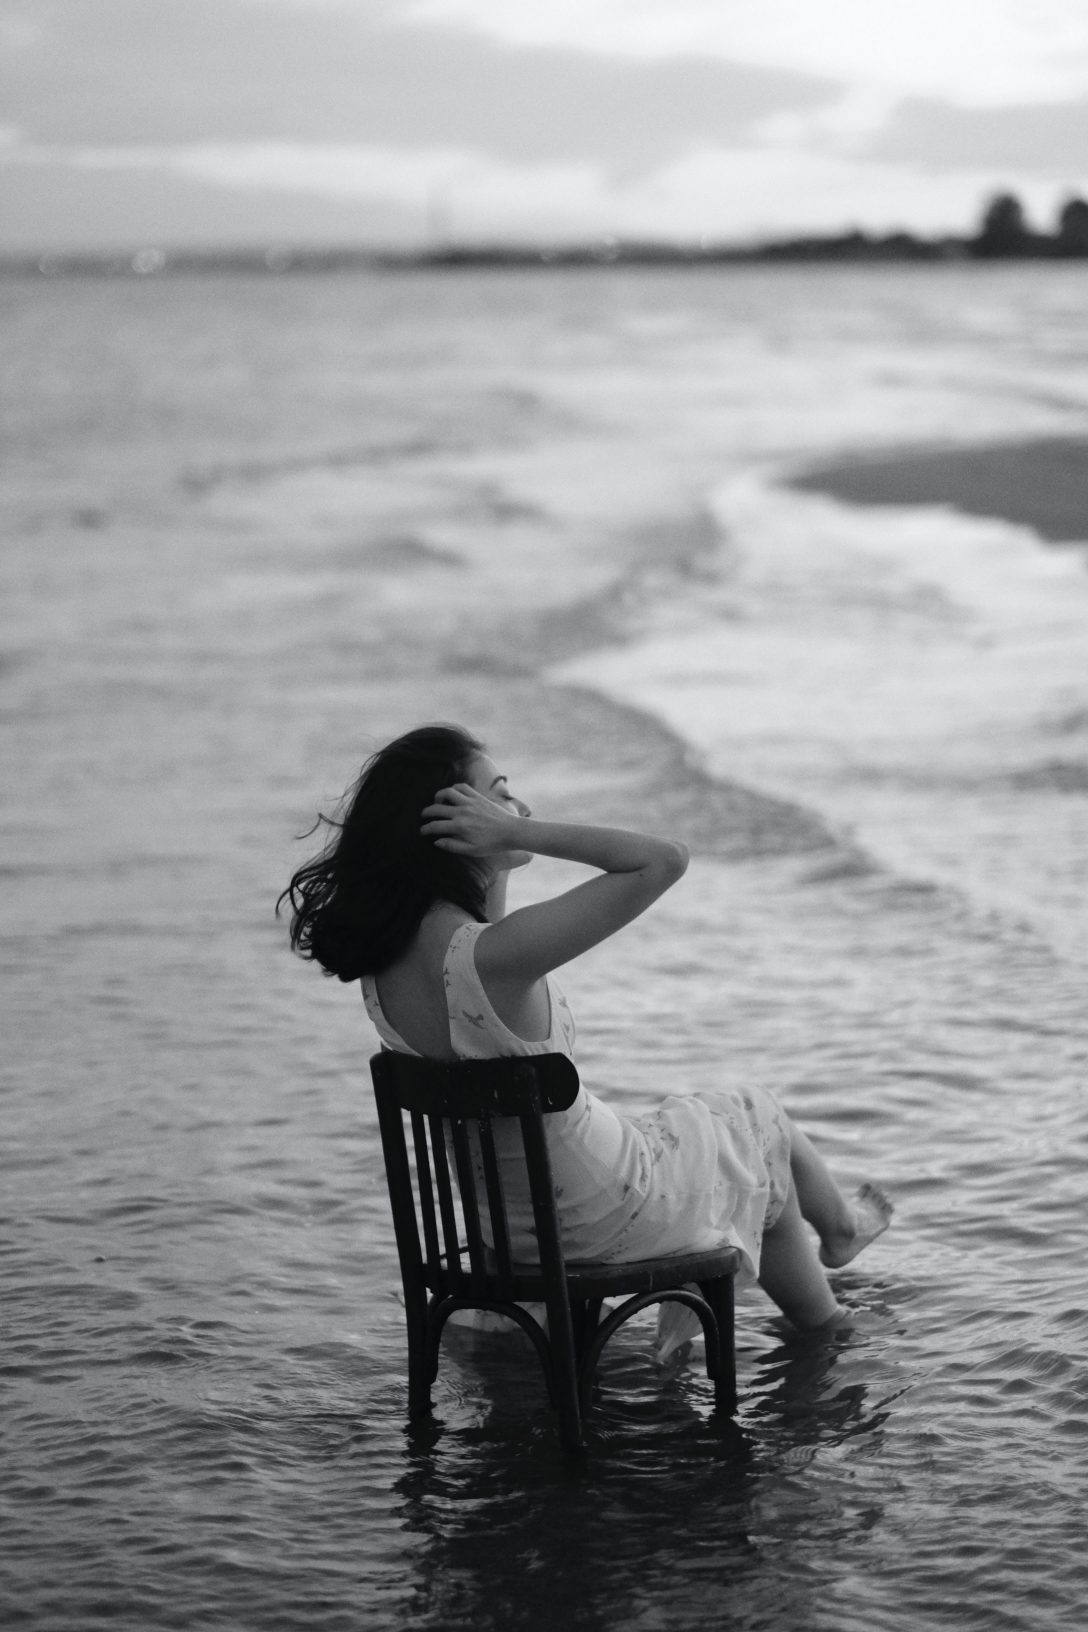 A woman enjoying fresh air near the ocean